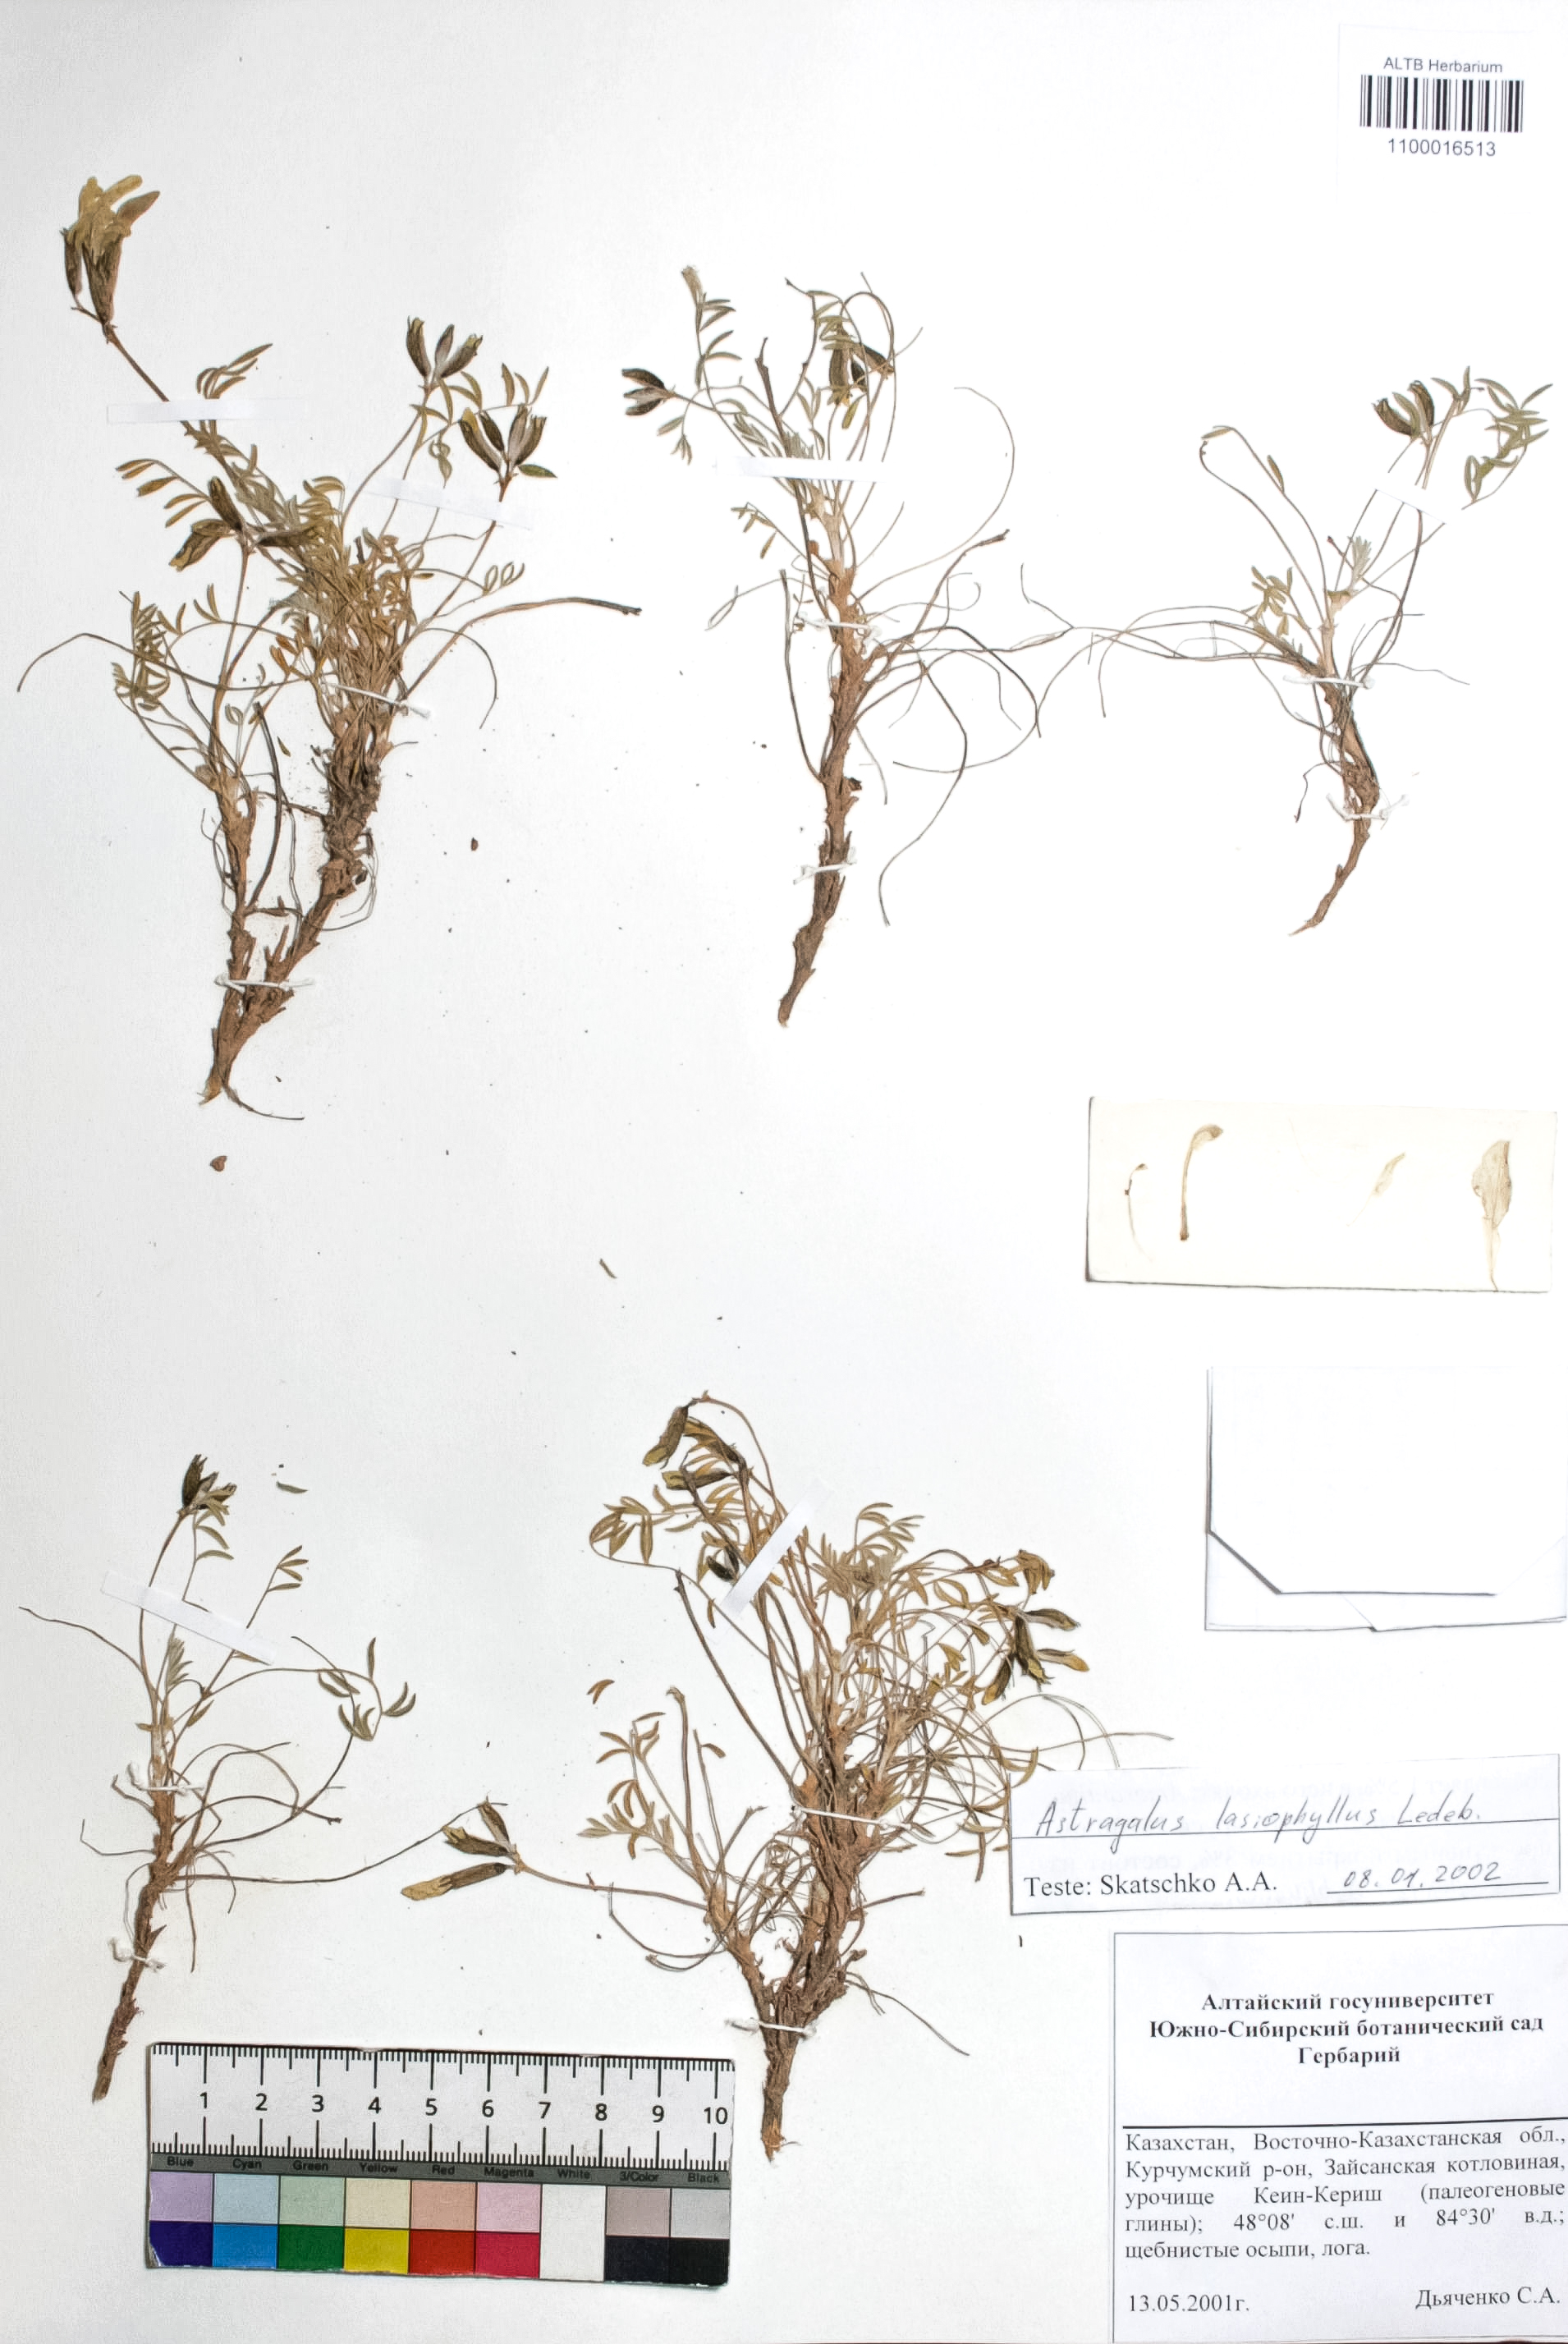 Astragalus lasiophyllus Ledeb.